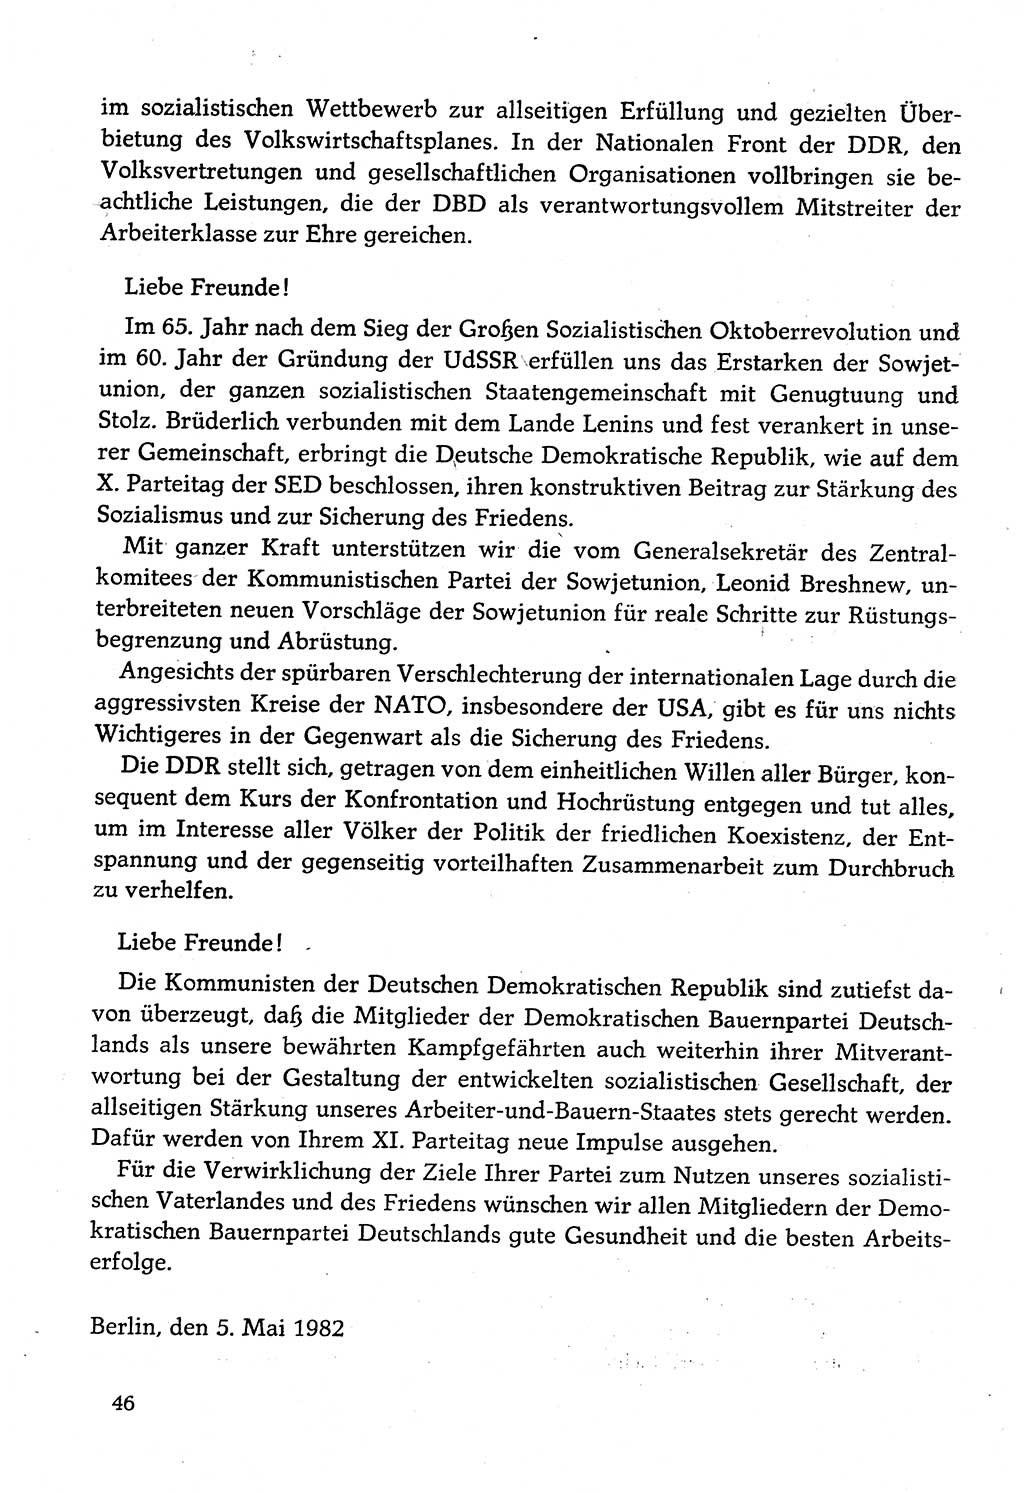 Dokumente der Sozialistischen Einheitspartei Deutschlands (SED) [Deutsche Demokratische Republik (DDR)] 1982-1983, Seite 46 (Dok. SED DDR 1982-1983, S. 46)